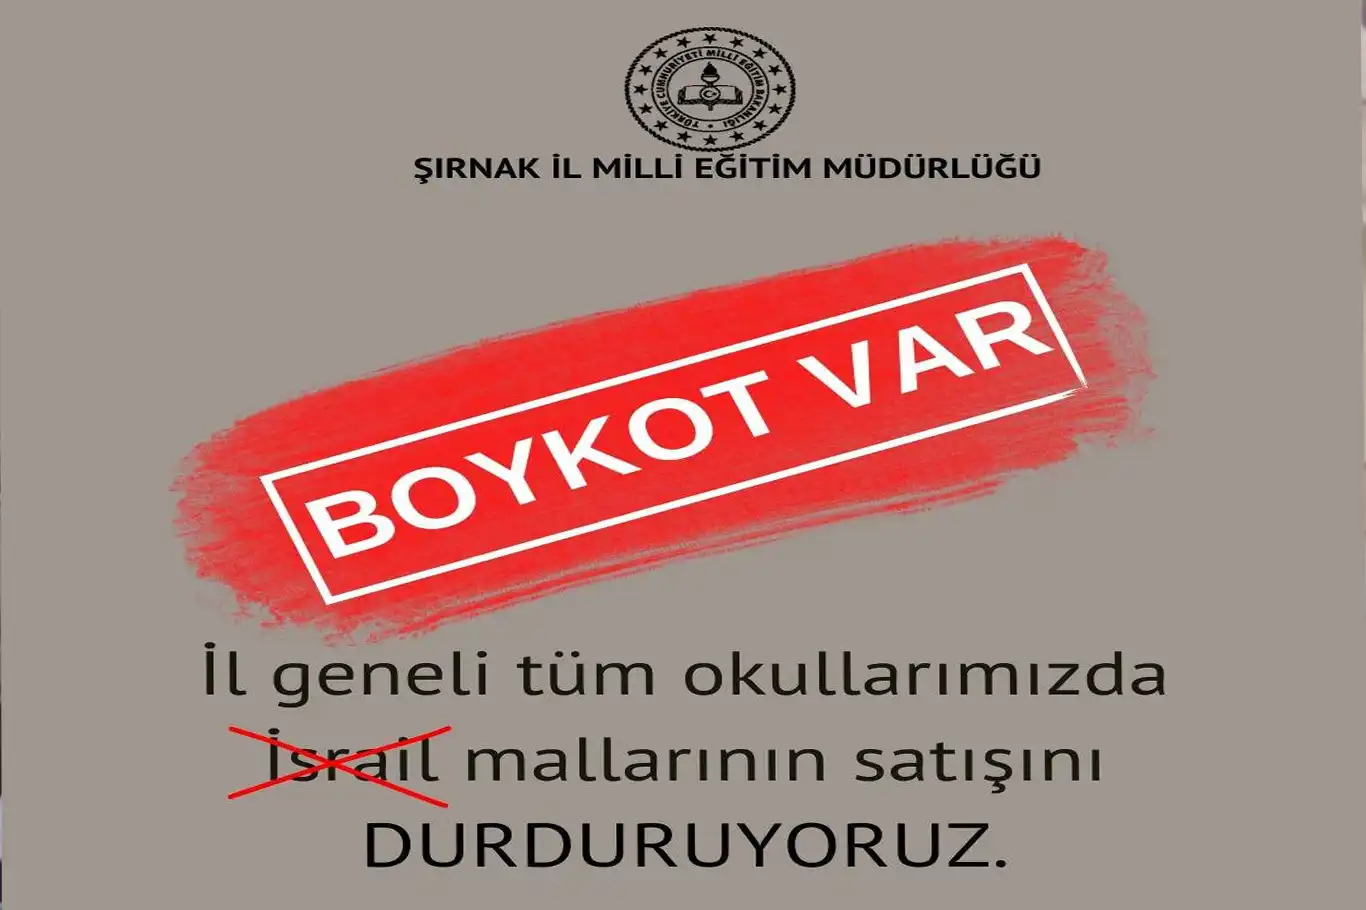 Şırnak Milli Eğitim Müdürlüğü, işgalci rejimin ürünlerini boykot kararı aldı